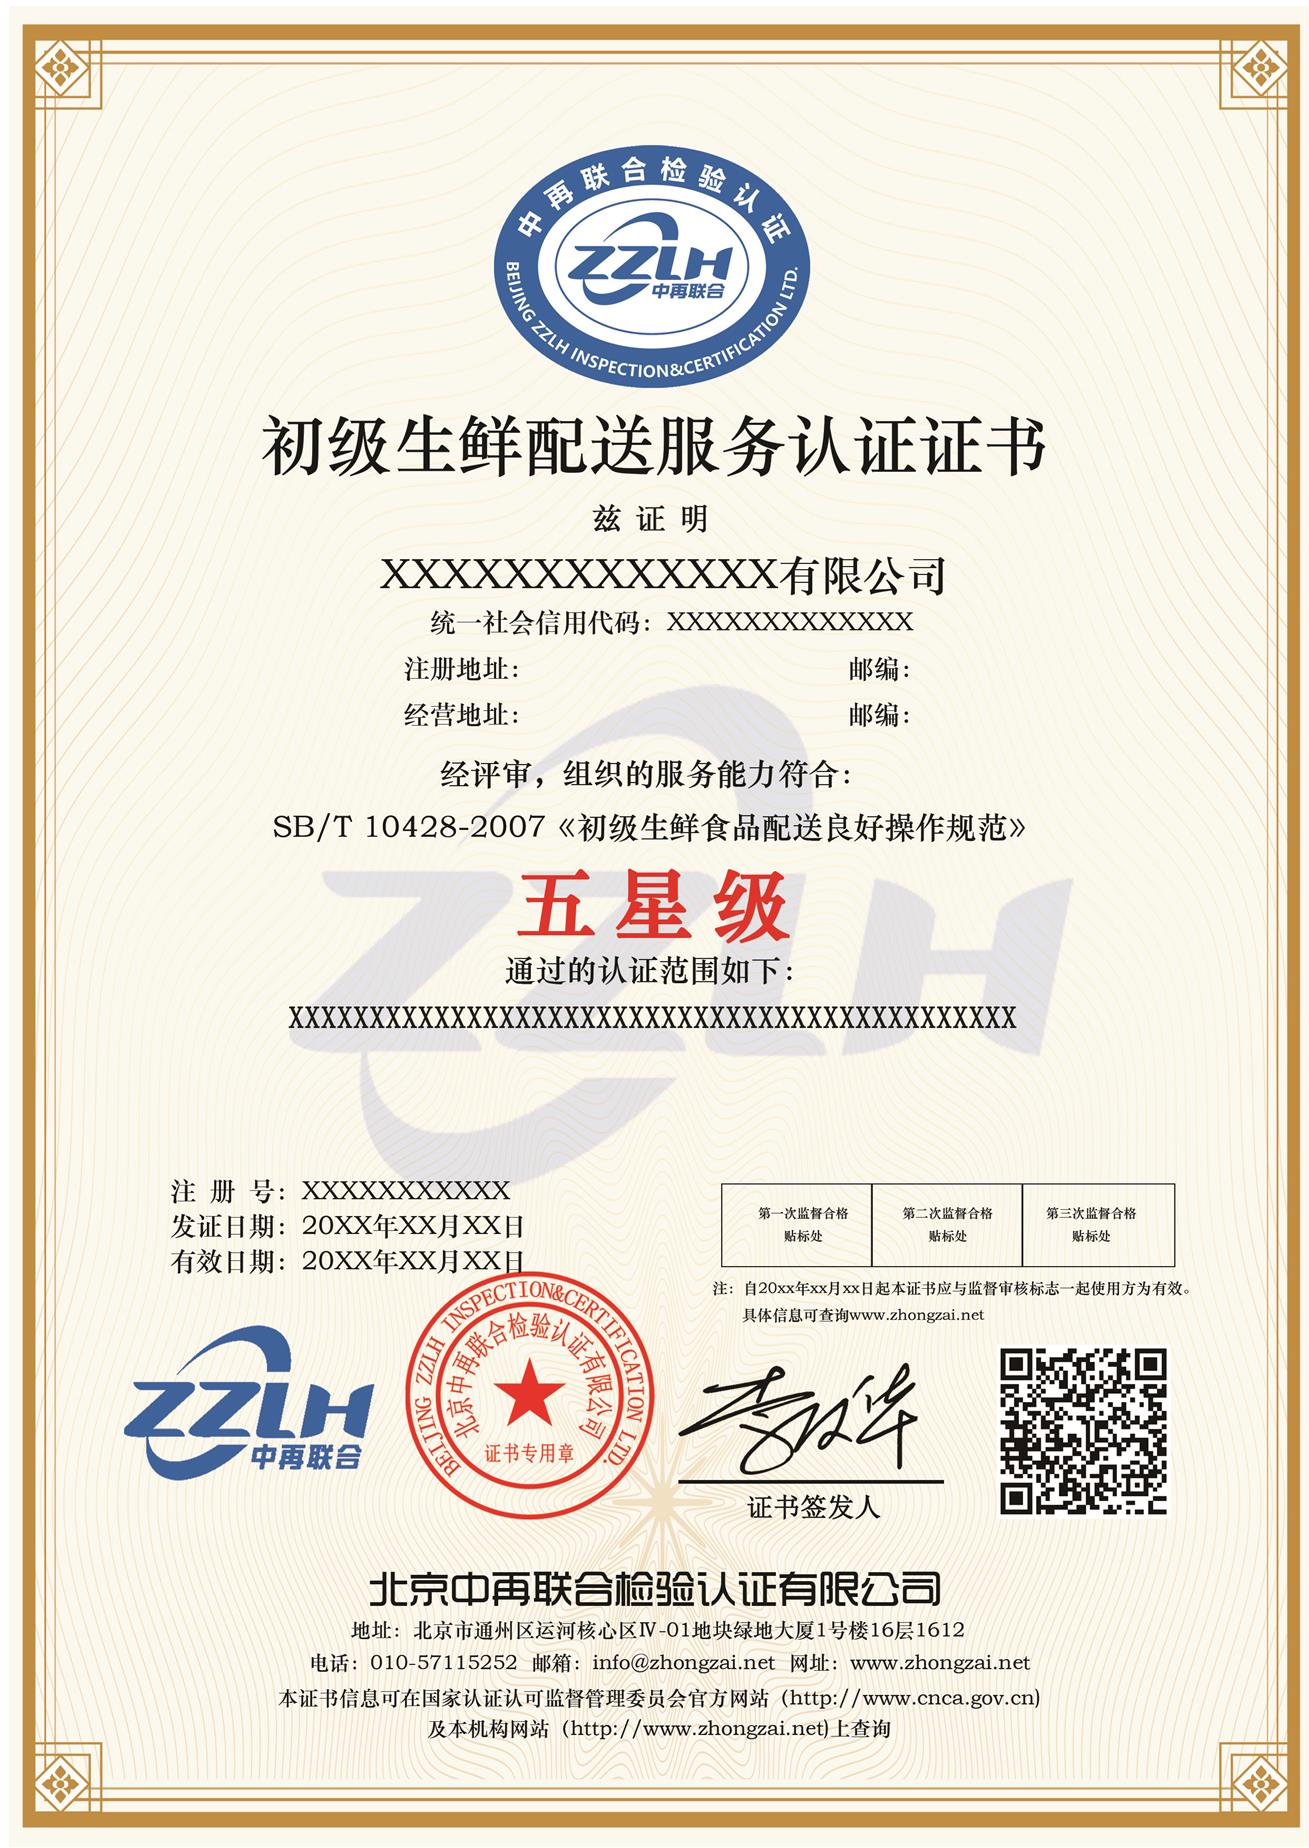 九江初级生鲜配送服务认证报价 减少企业风险 生鲜配送五星级认证